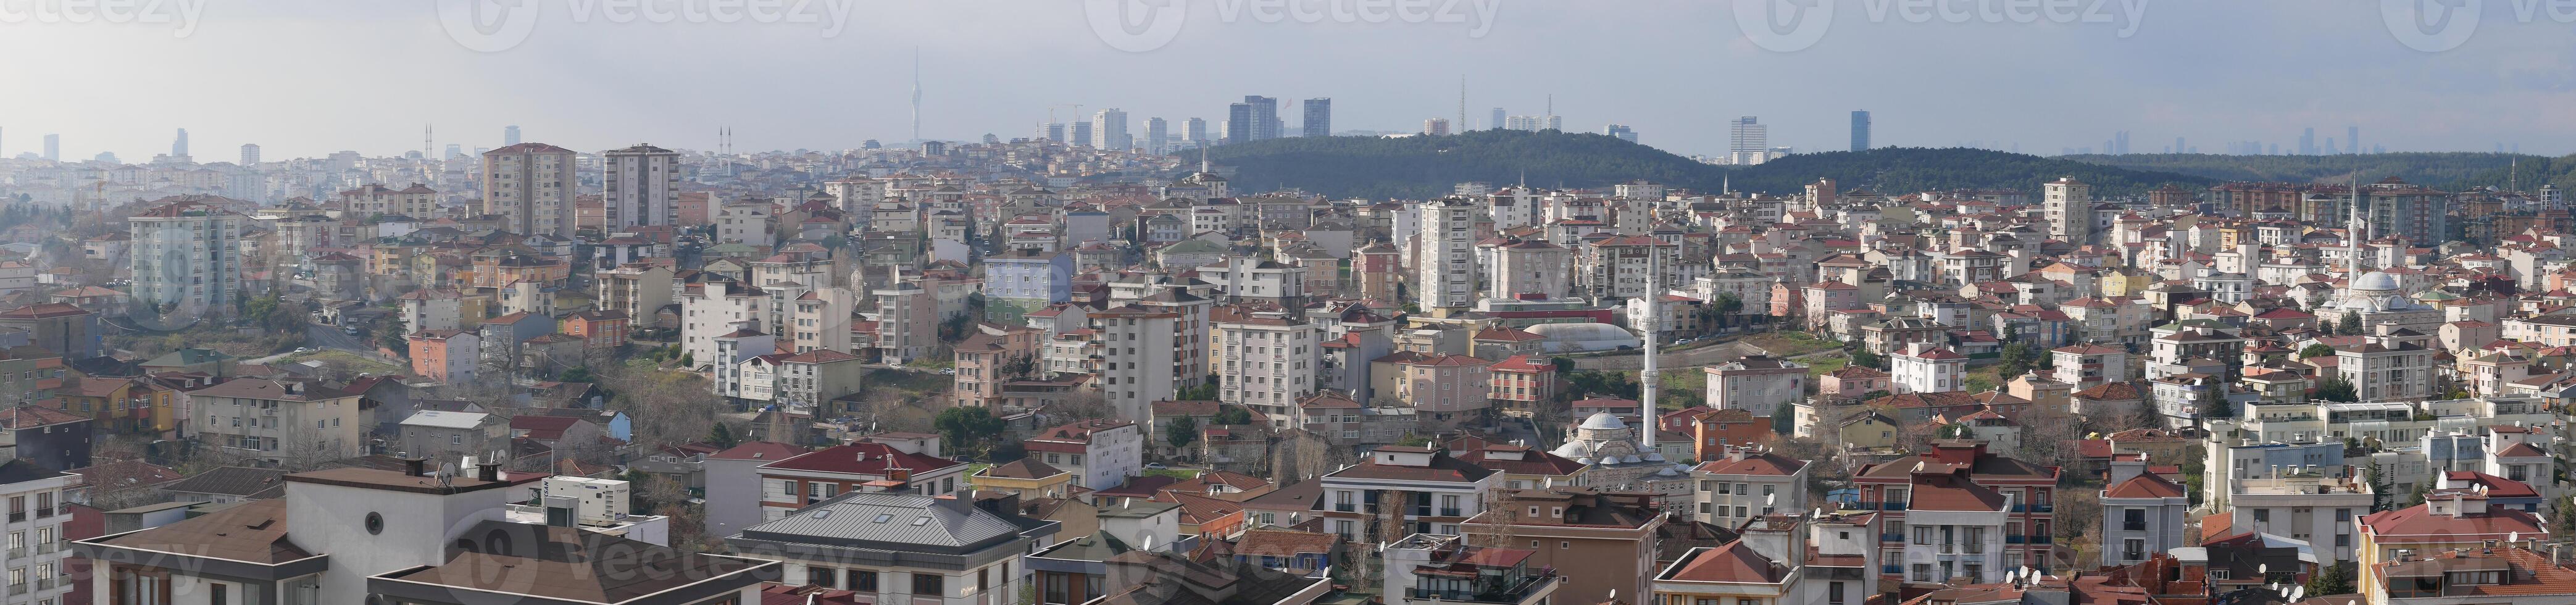 panorama de F Estanbul residencial edificios foto